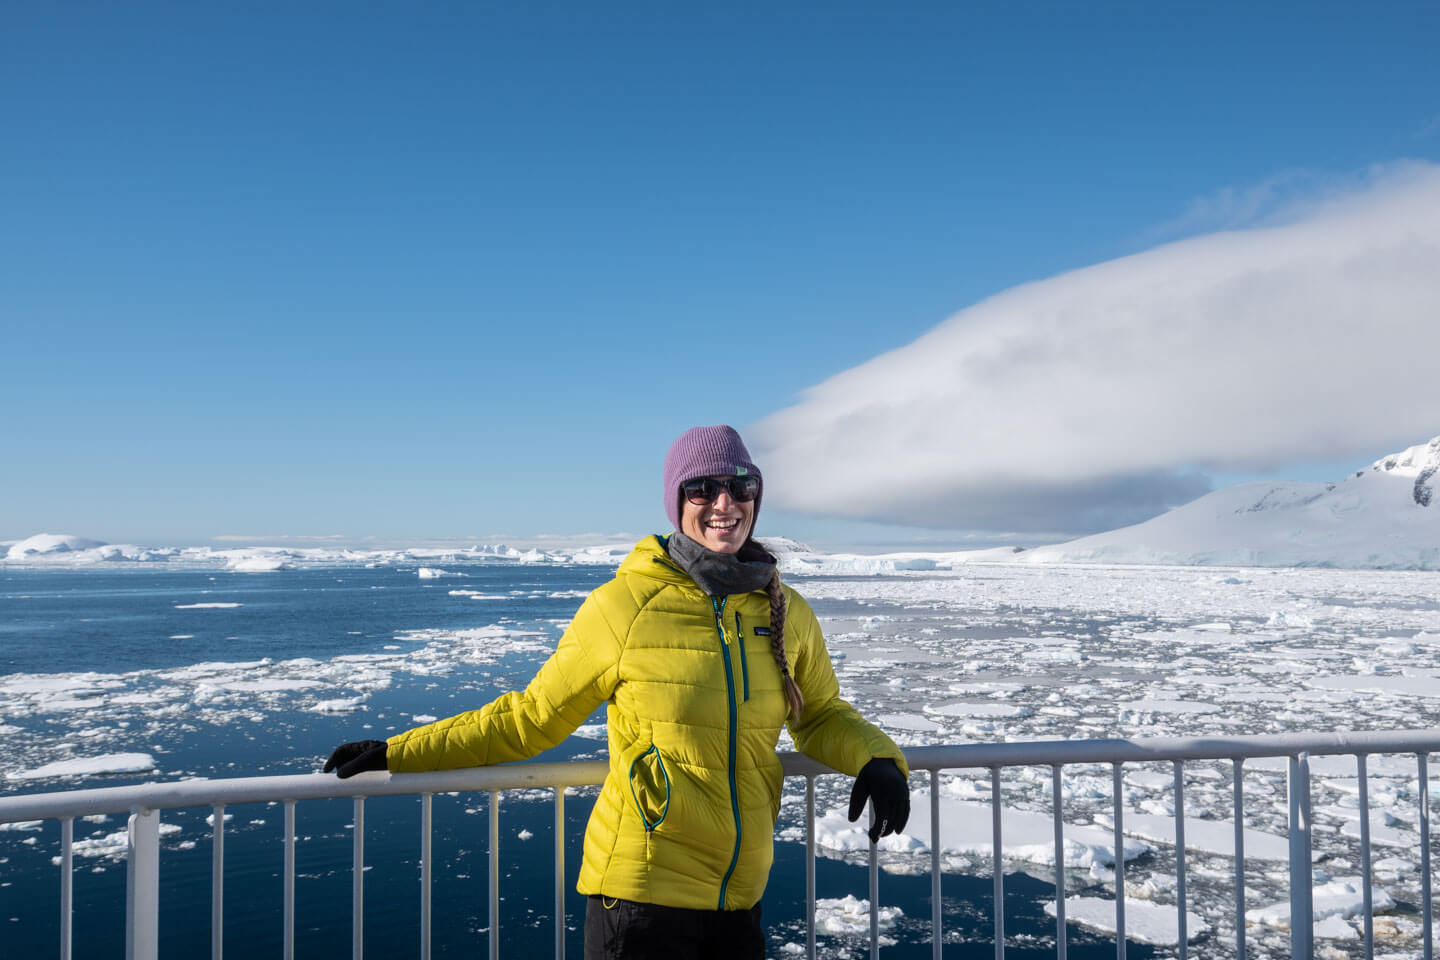 Story of Alexandra Bacho in Antarctica